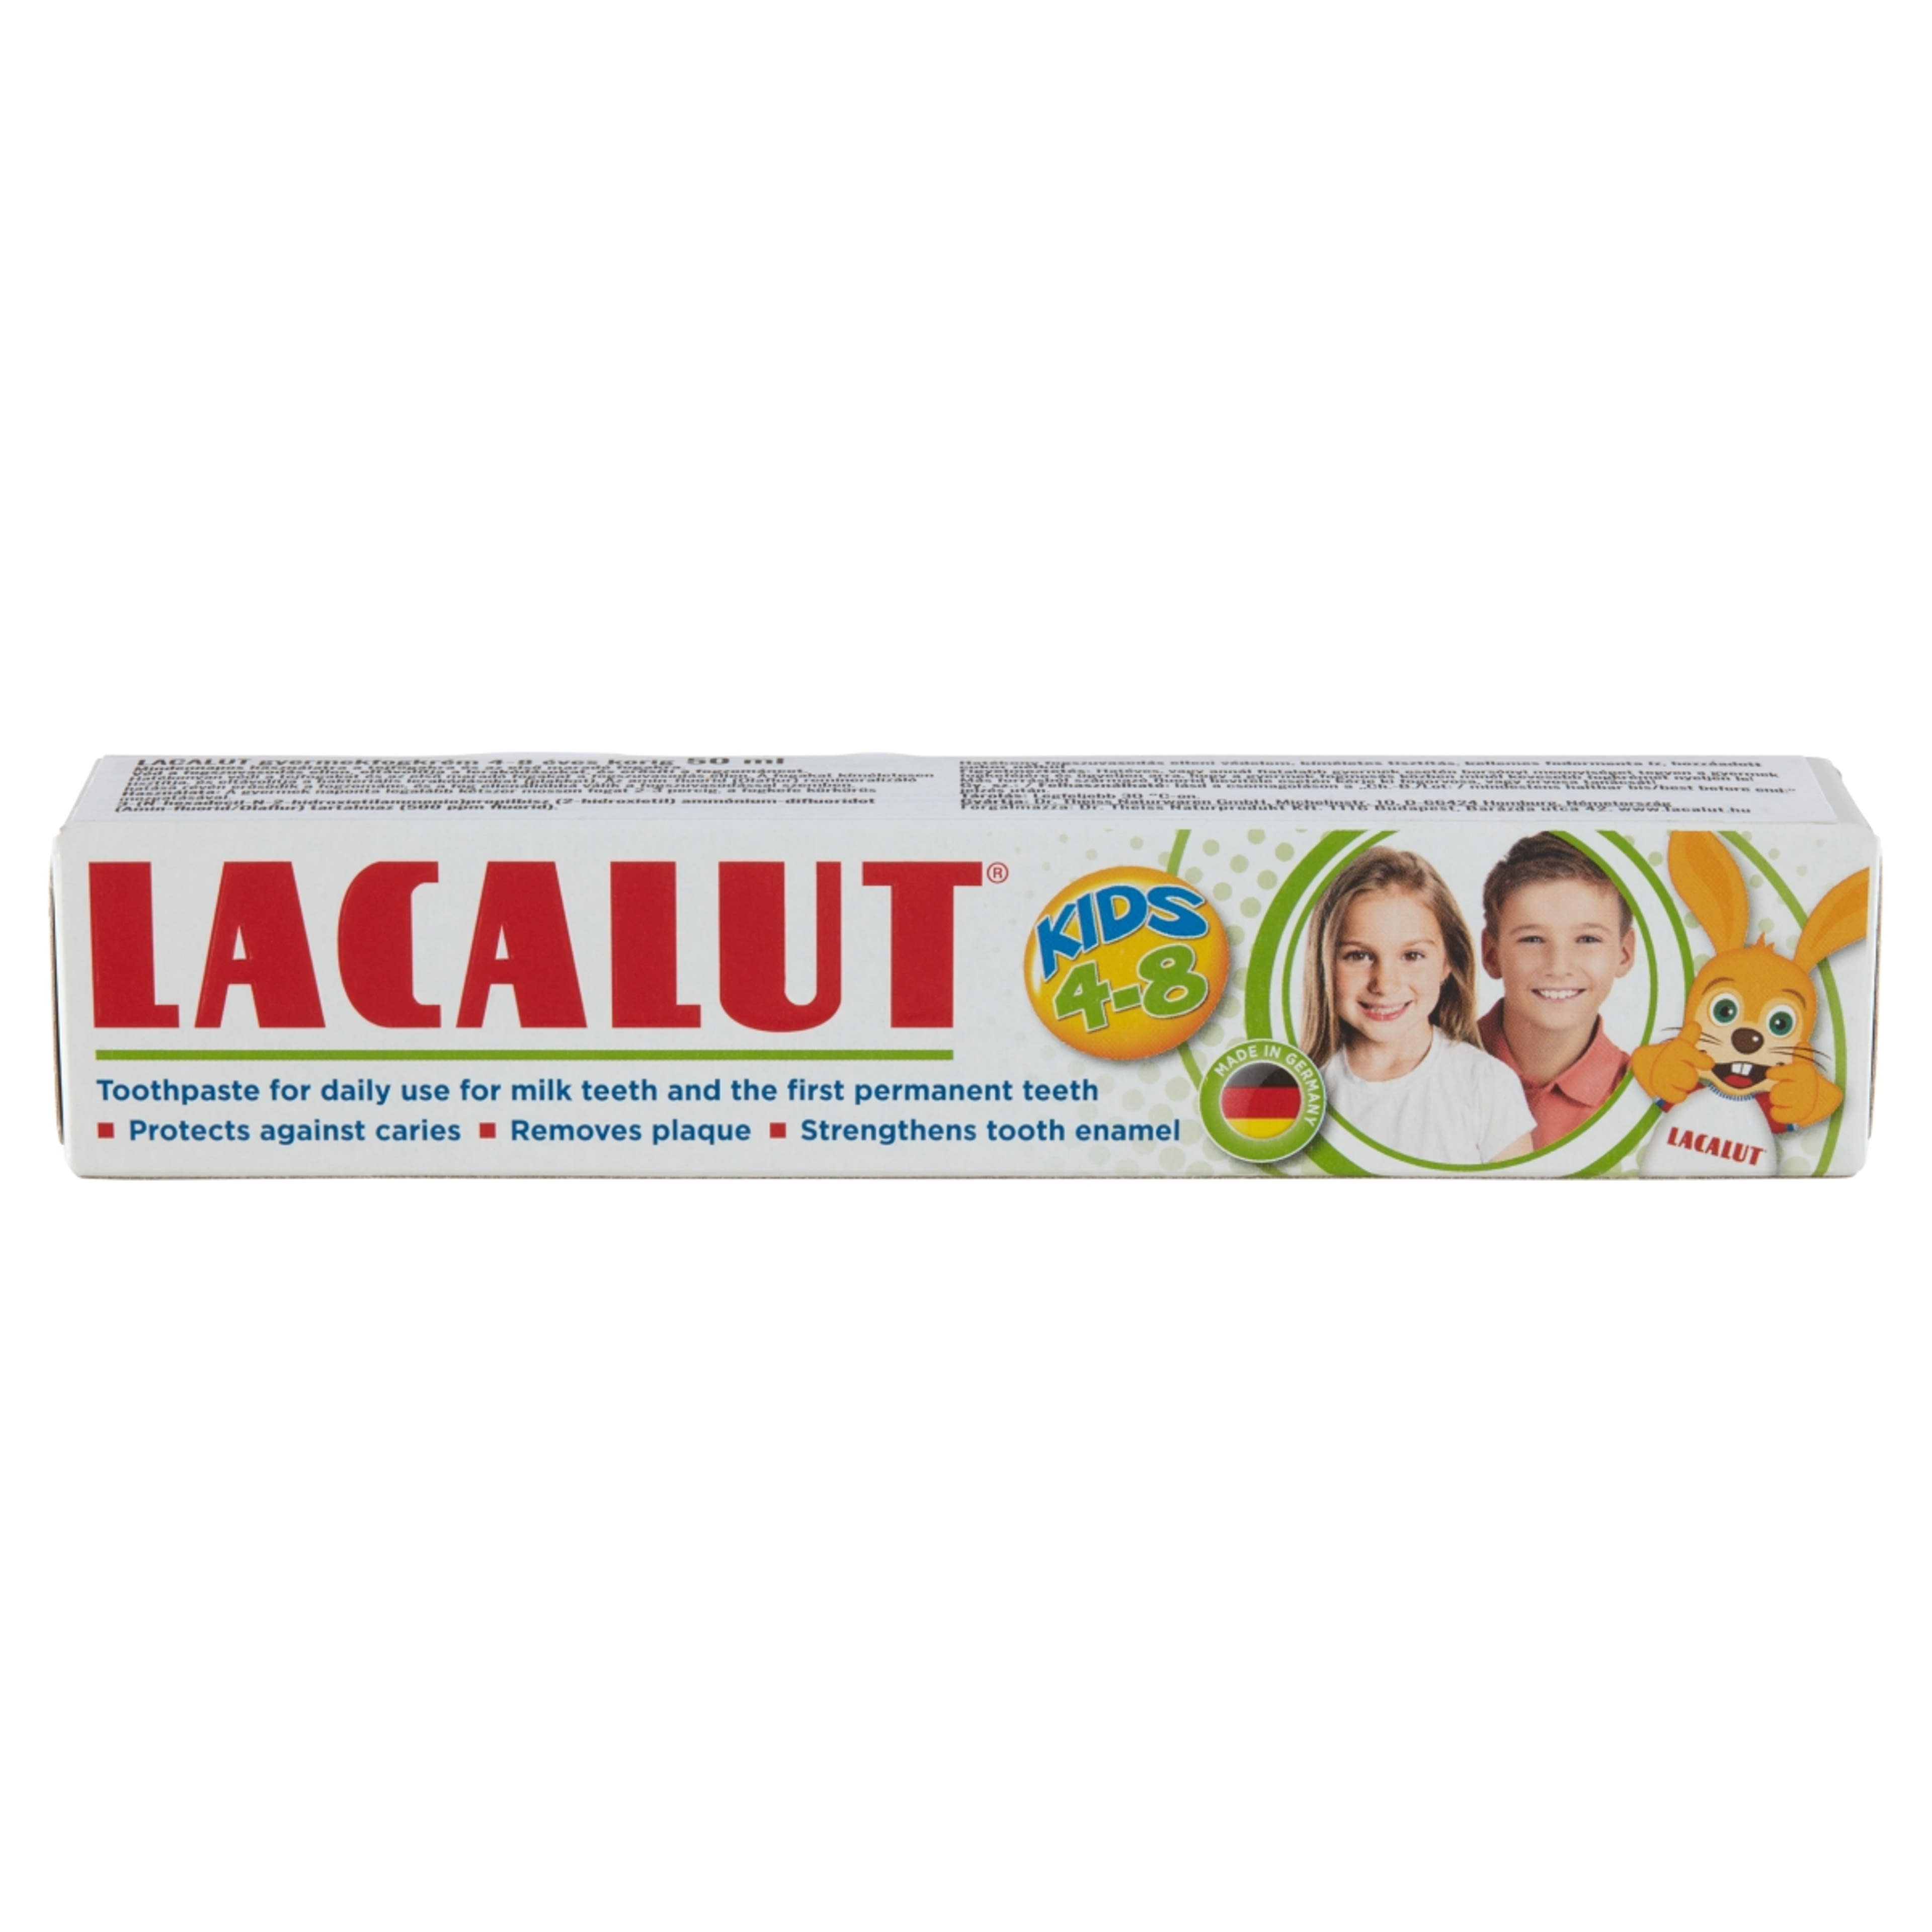 Lacalut gyerek fogkrém, 4-8 éves korig - 50 ml-2